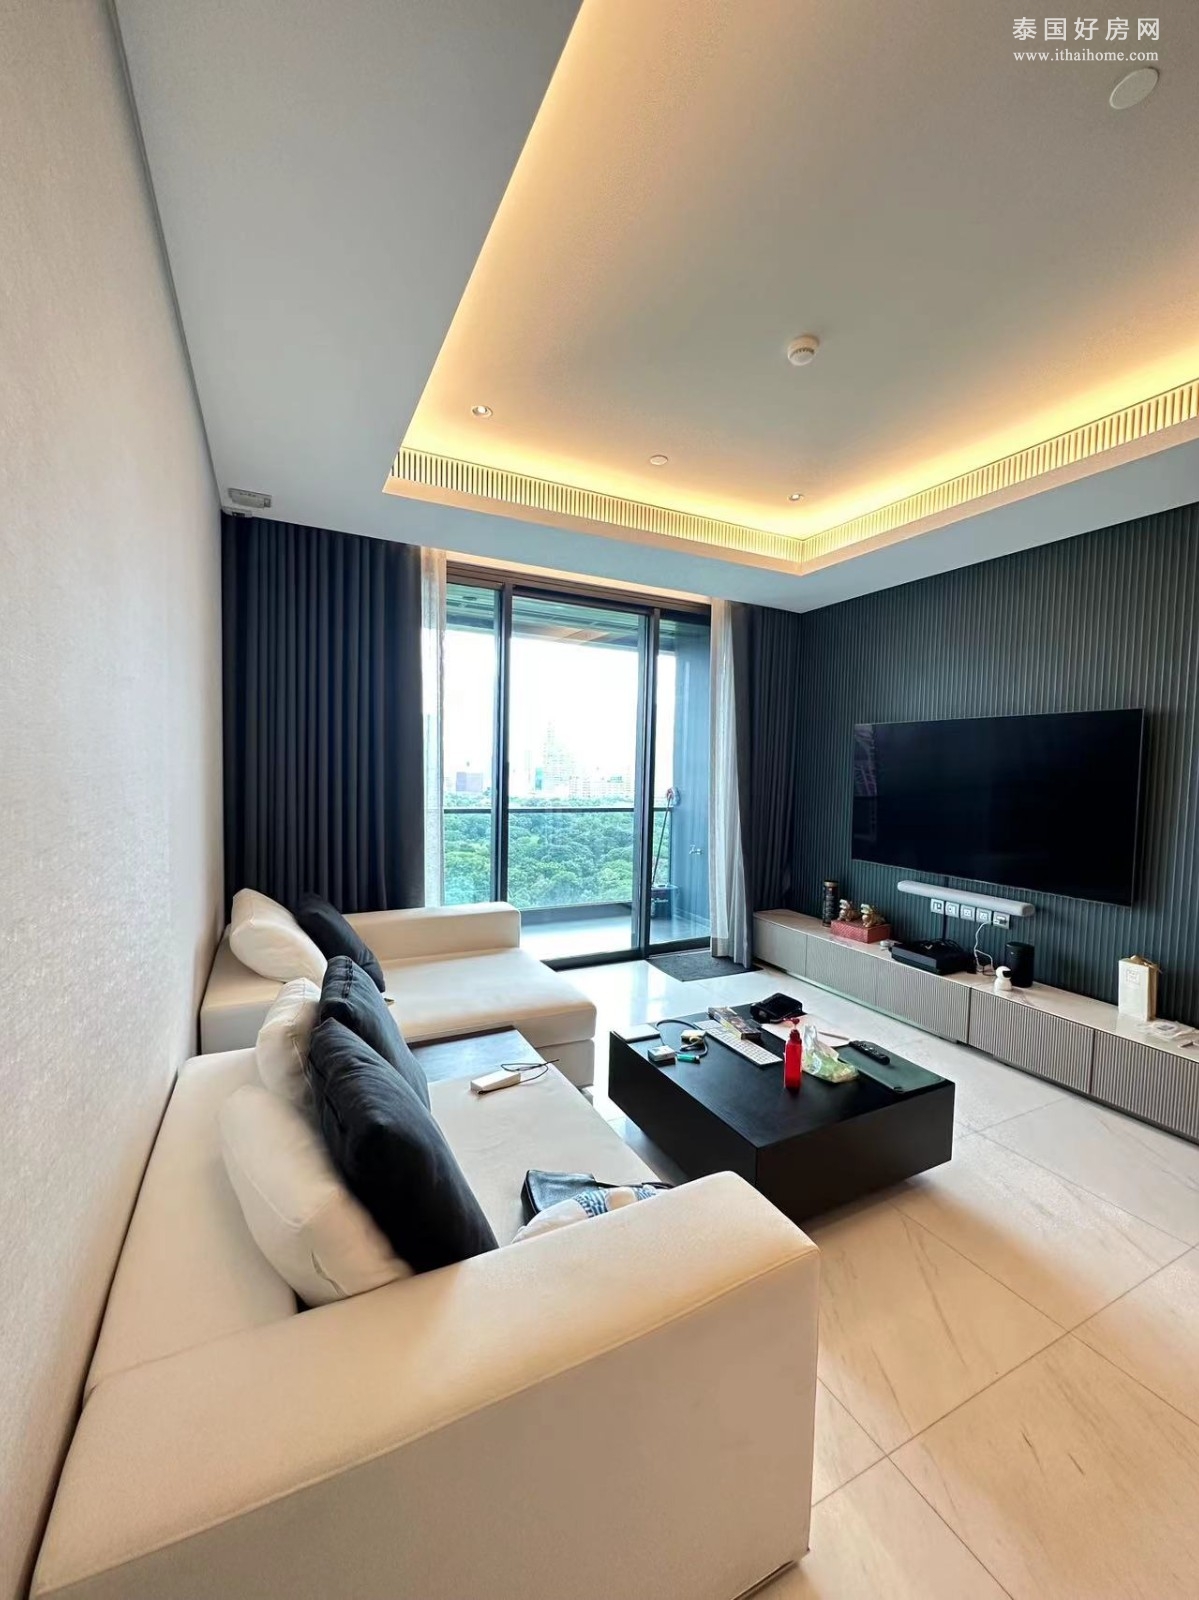 巴吞旺区 | Sindhorn Tonson 公寓出售 2卧 105平米 2800万泰铢